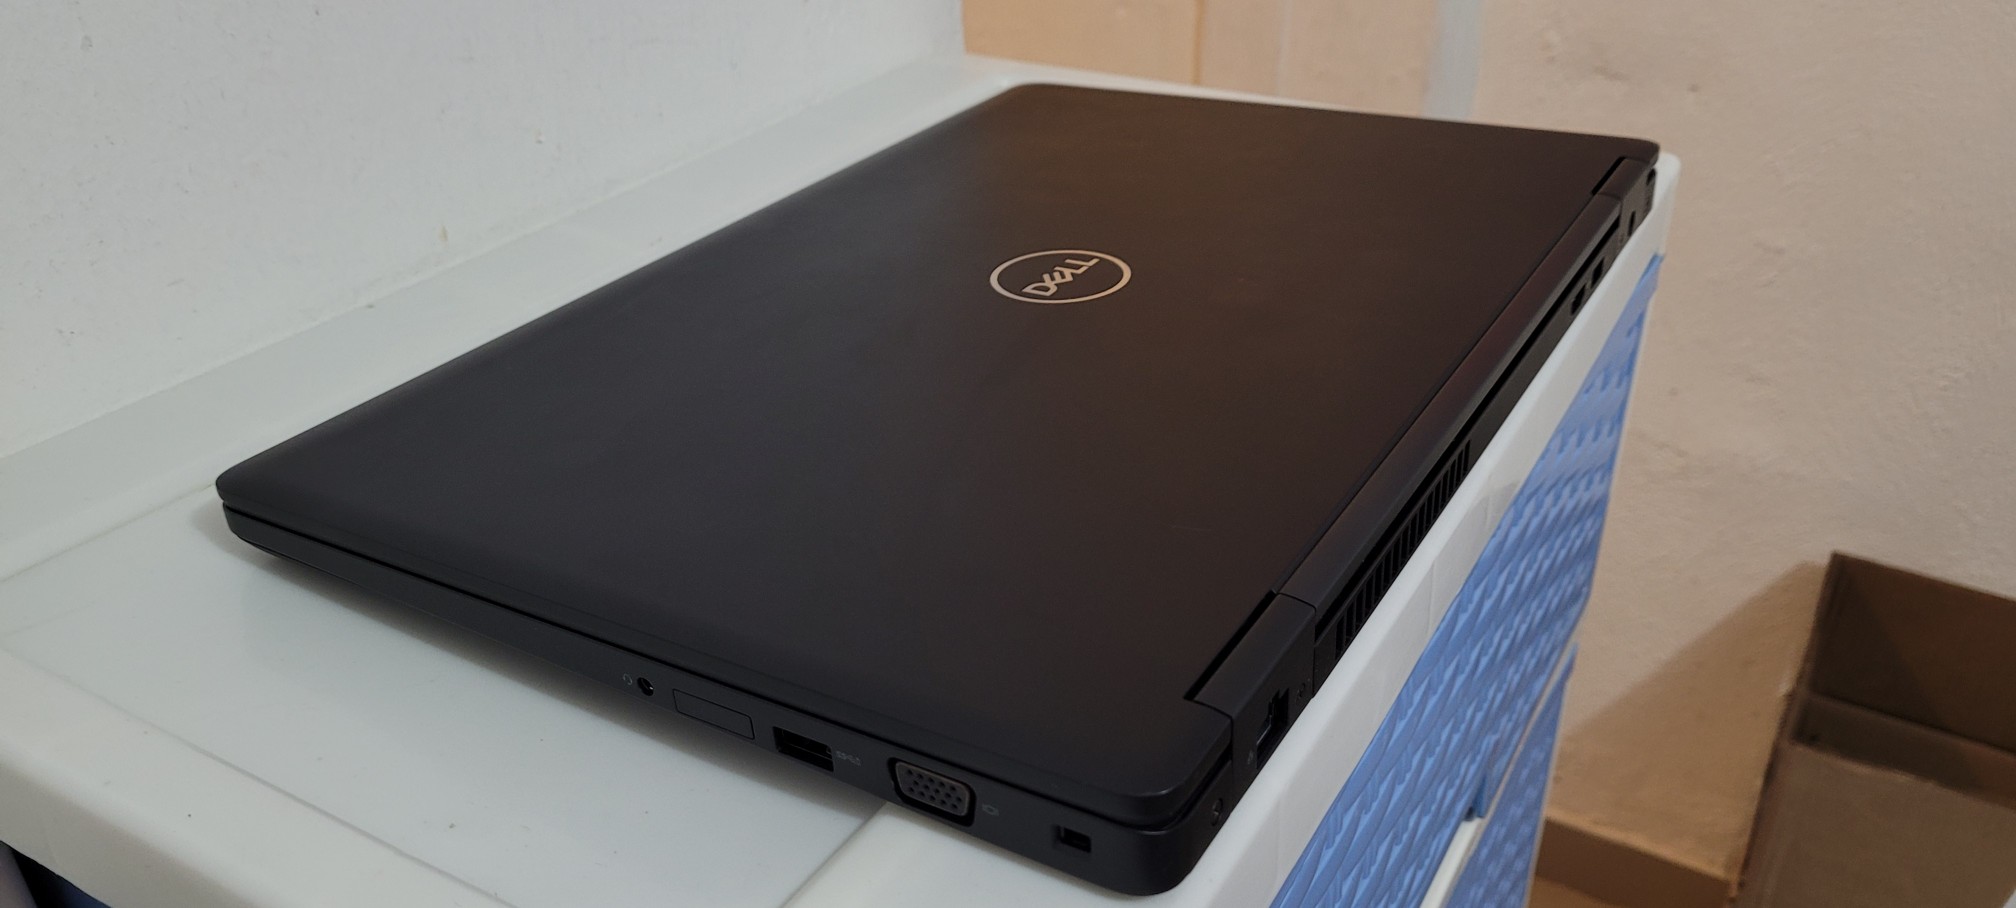 computadoras y laptops - Dell Gaming Core i7 10ma Gen Ram 16gb ddr4 Disco 256gb SSD Y 1tb Gtx 1650Ti 4gb 2